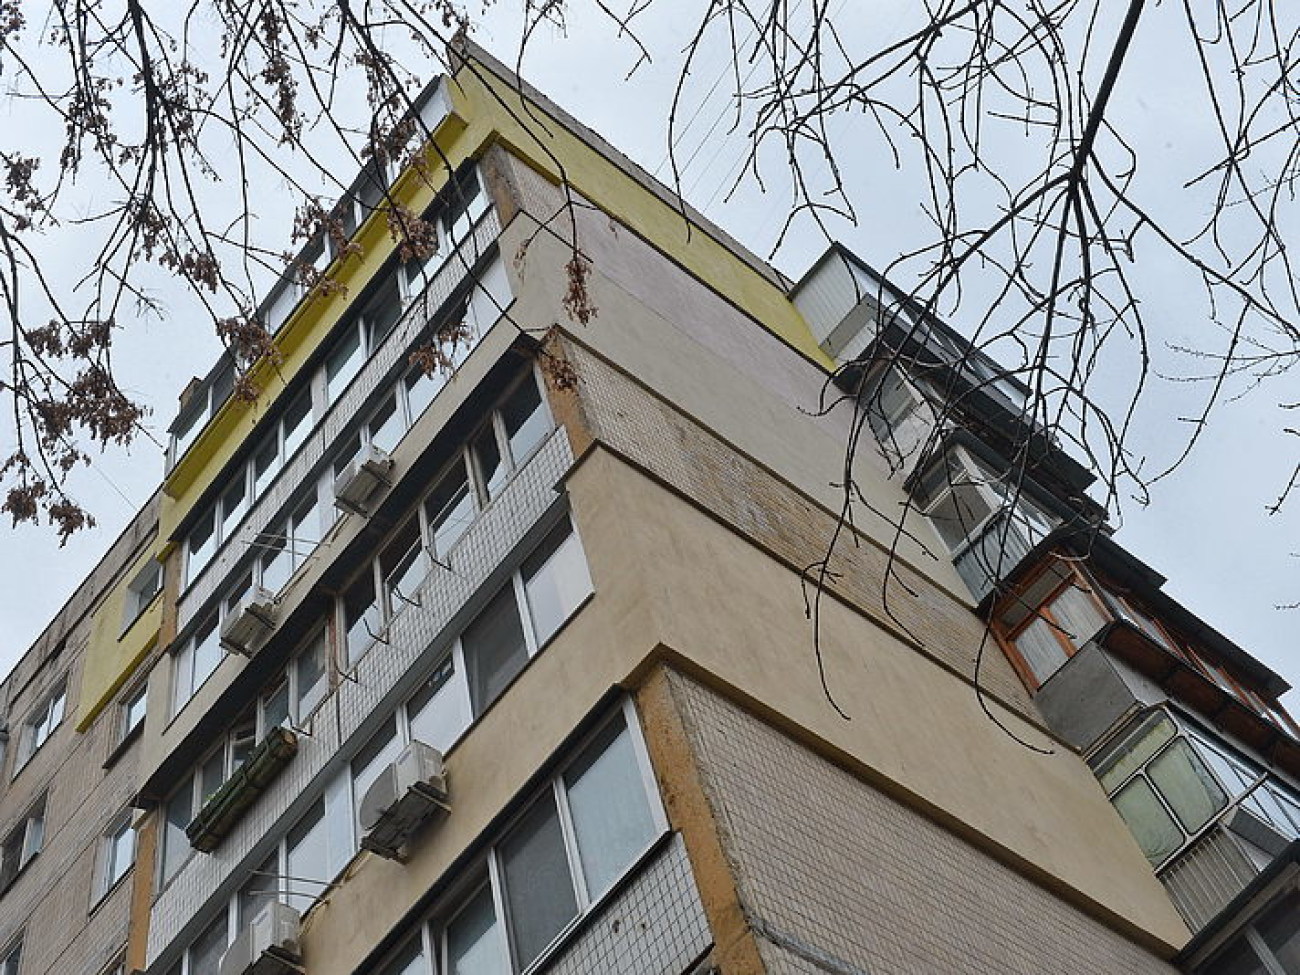 Обедневшие украинцы пытаются утеплять свое жилье, не дожидаясь помощи от властей